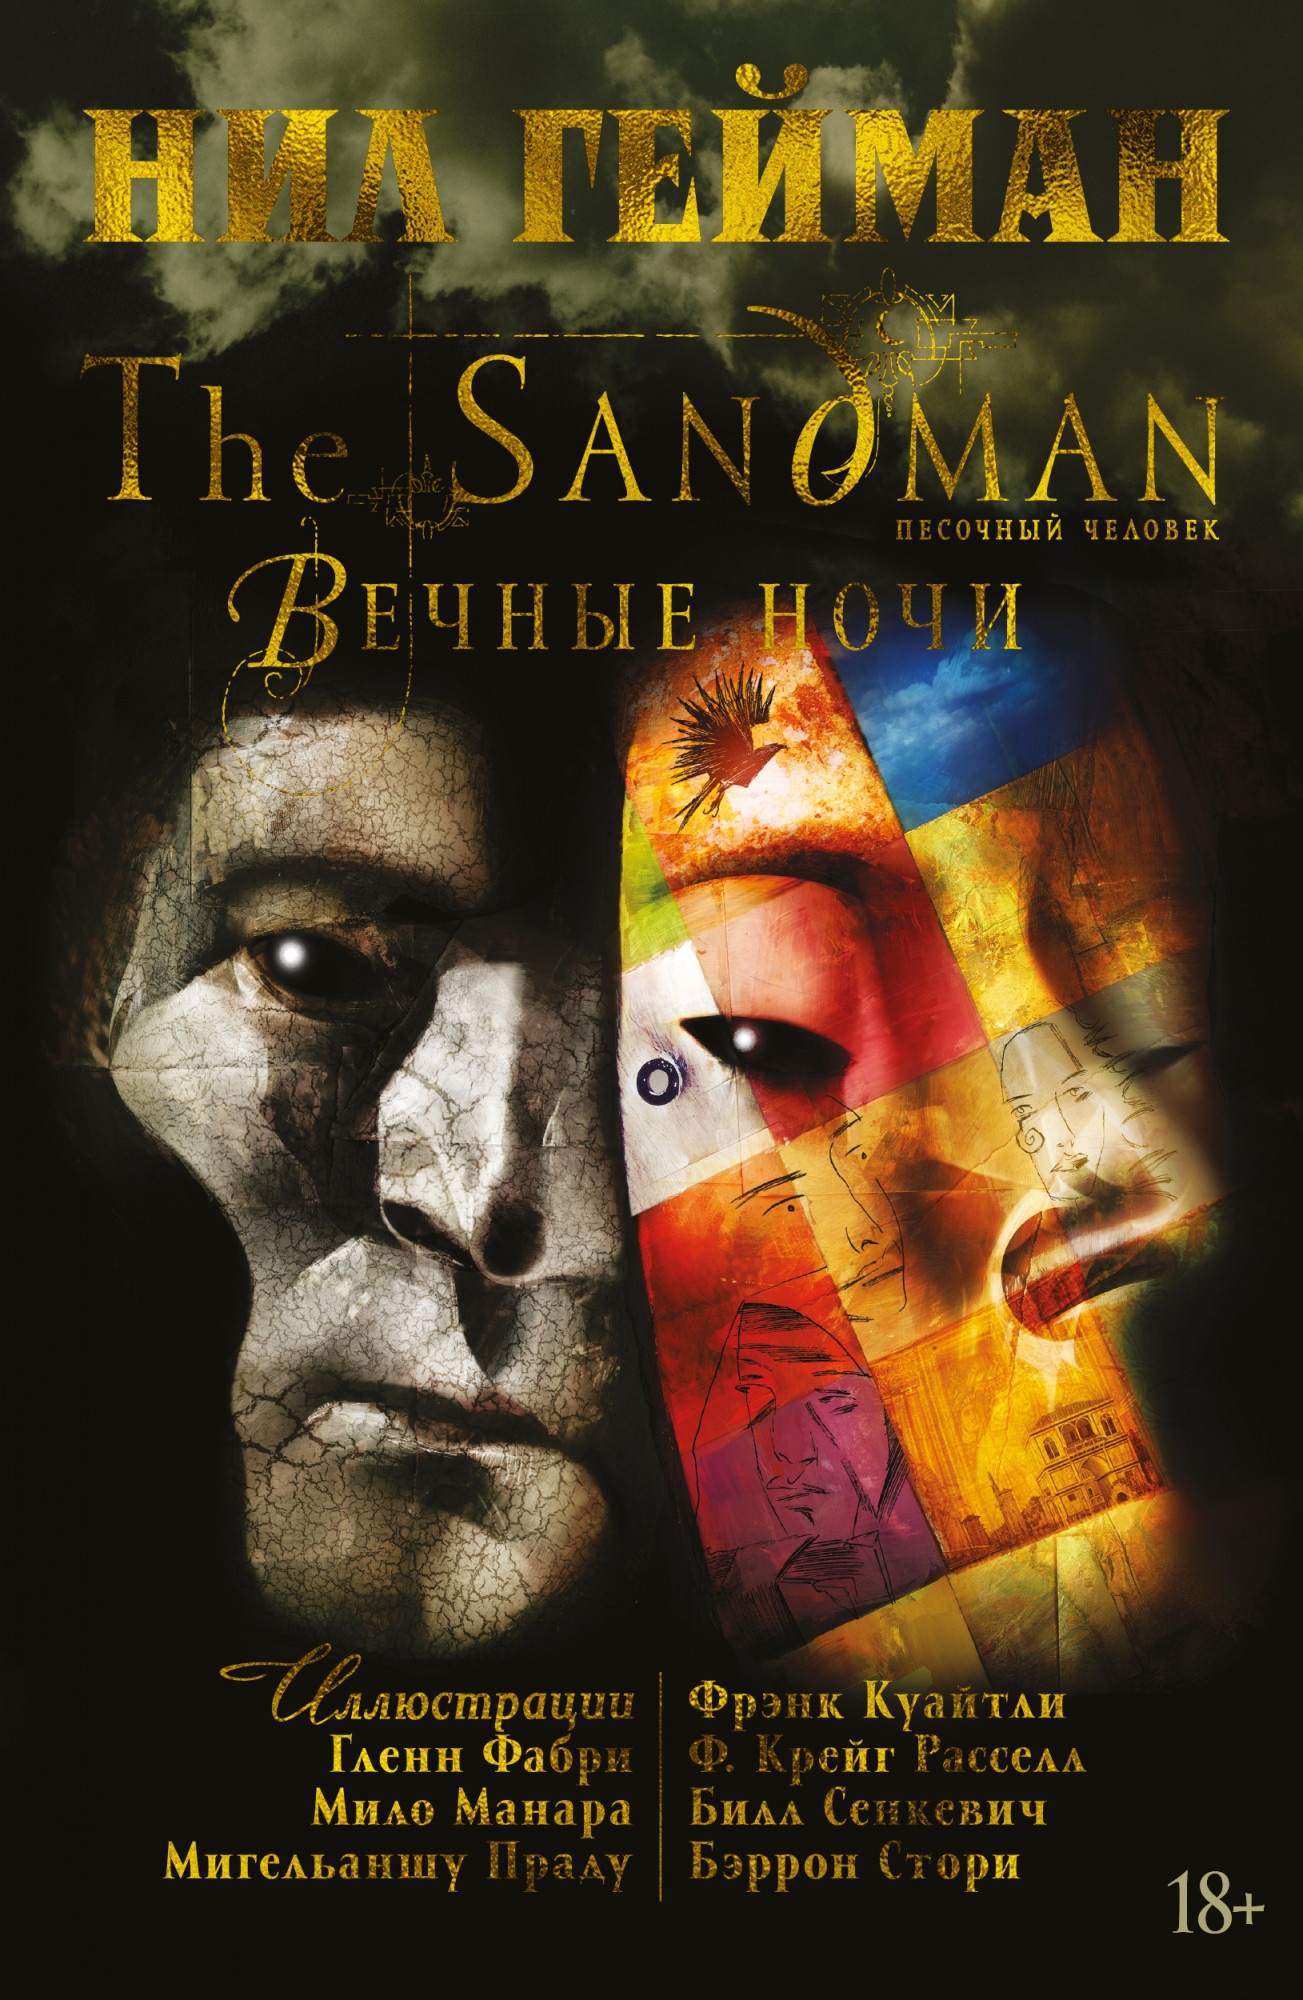 Book “The Sandman. Песочный человек. Вечные ночи” by Нил Гейман — 2020